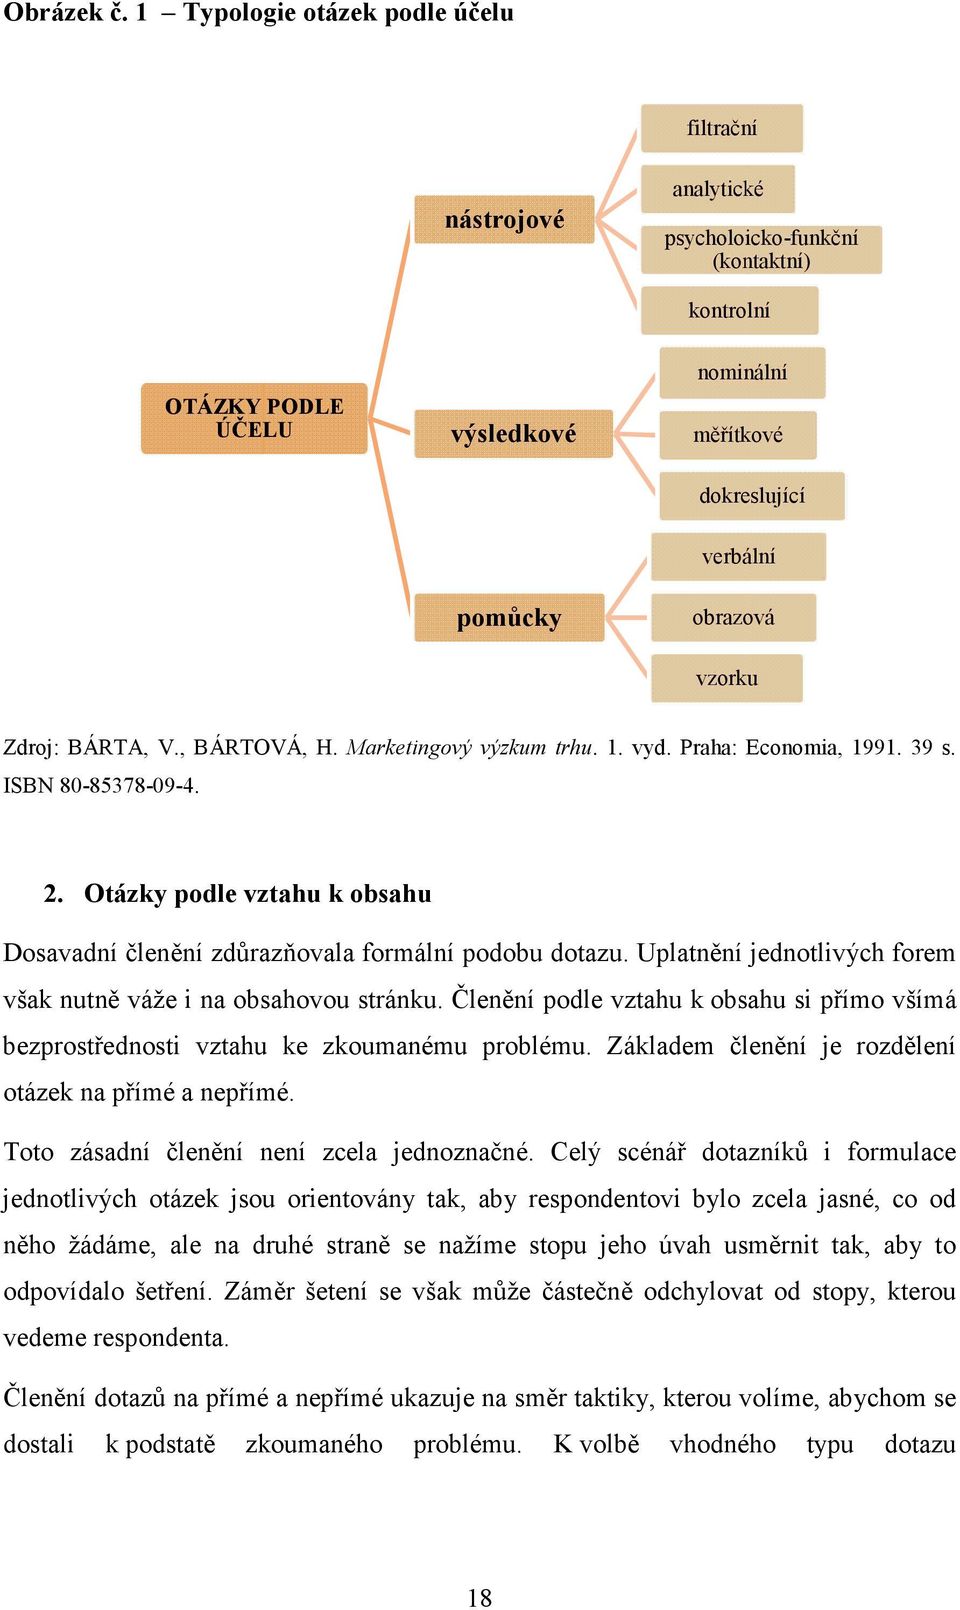 vzorku Zdroj: BÁRTA, V., BÁRTOVÁ, H. Marketingový výzkum trhu. 1. vyd. Praha: Economia, 1991. 39 s. ISBN 80-85378-09-4. 2.